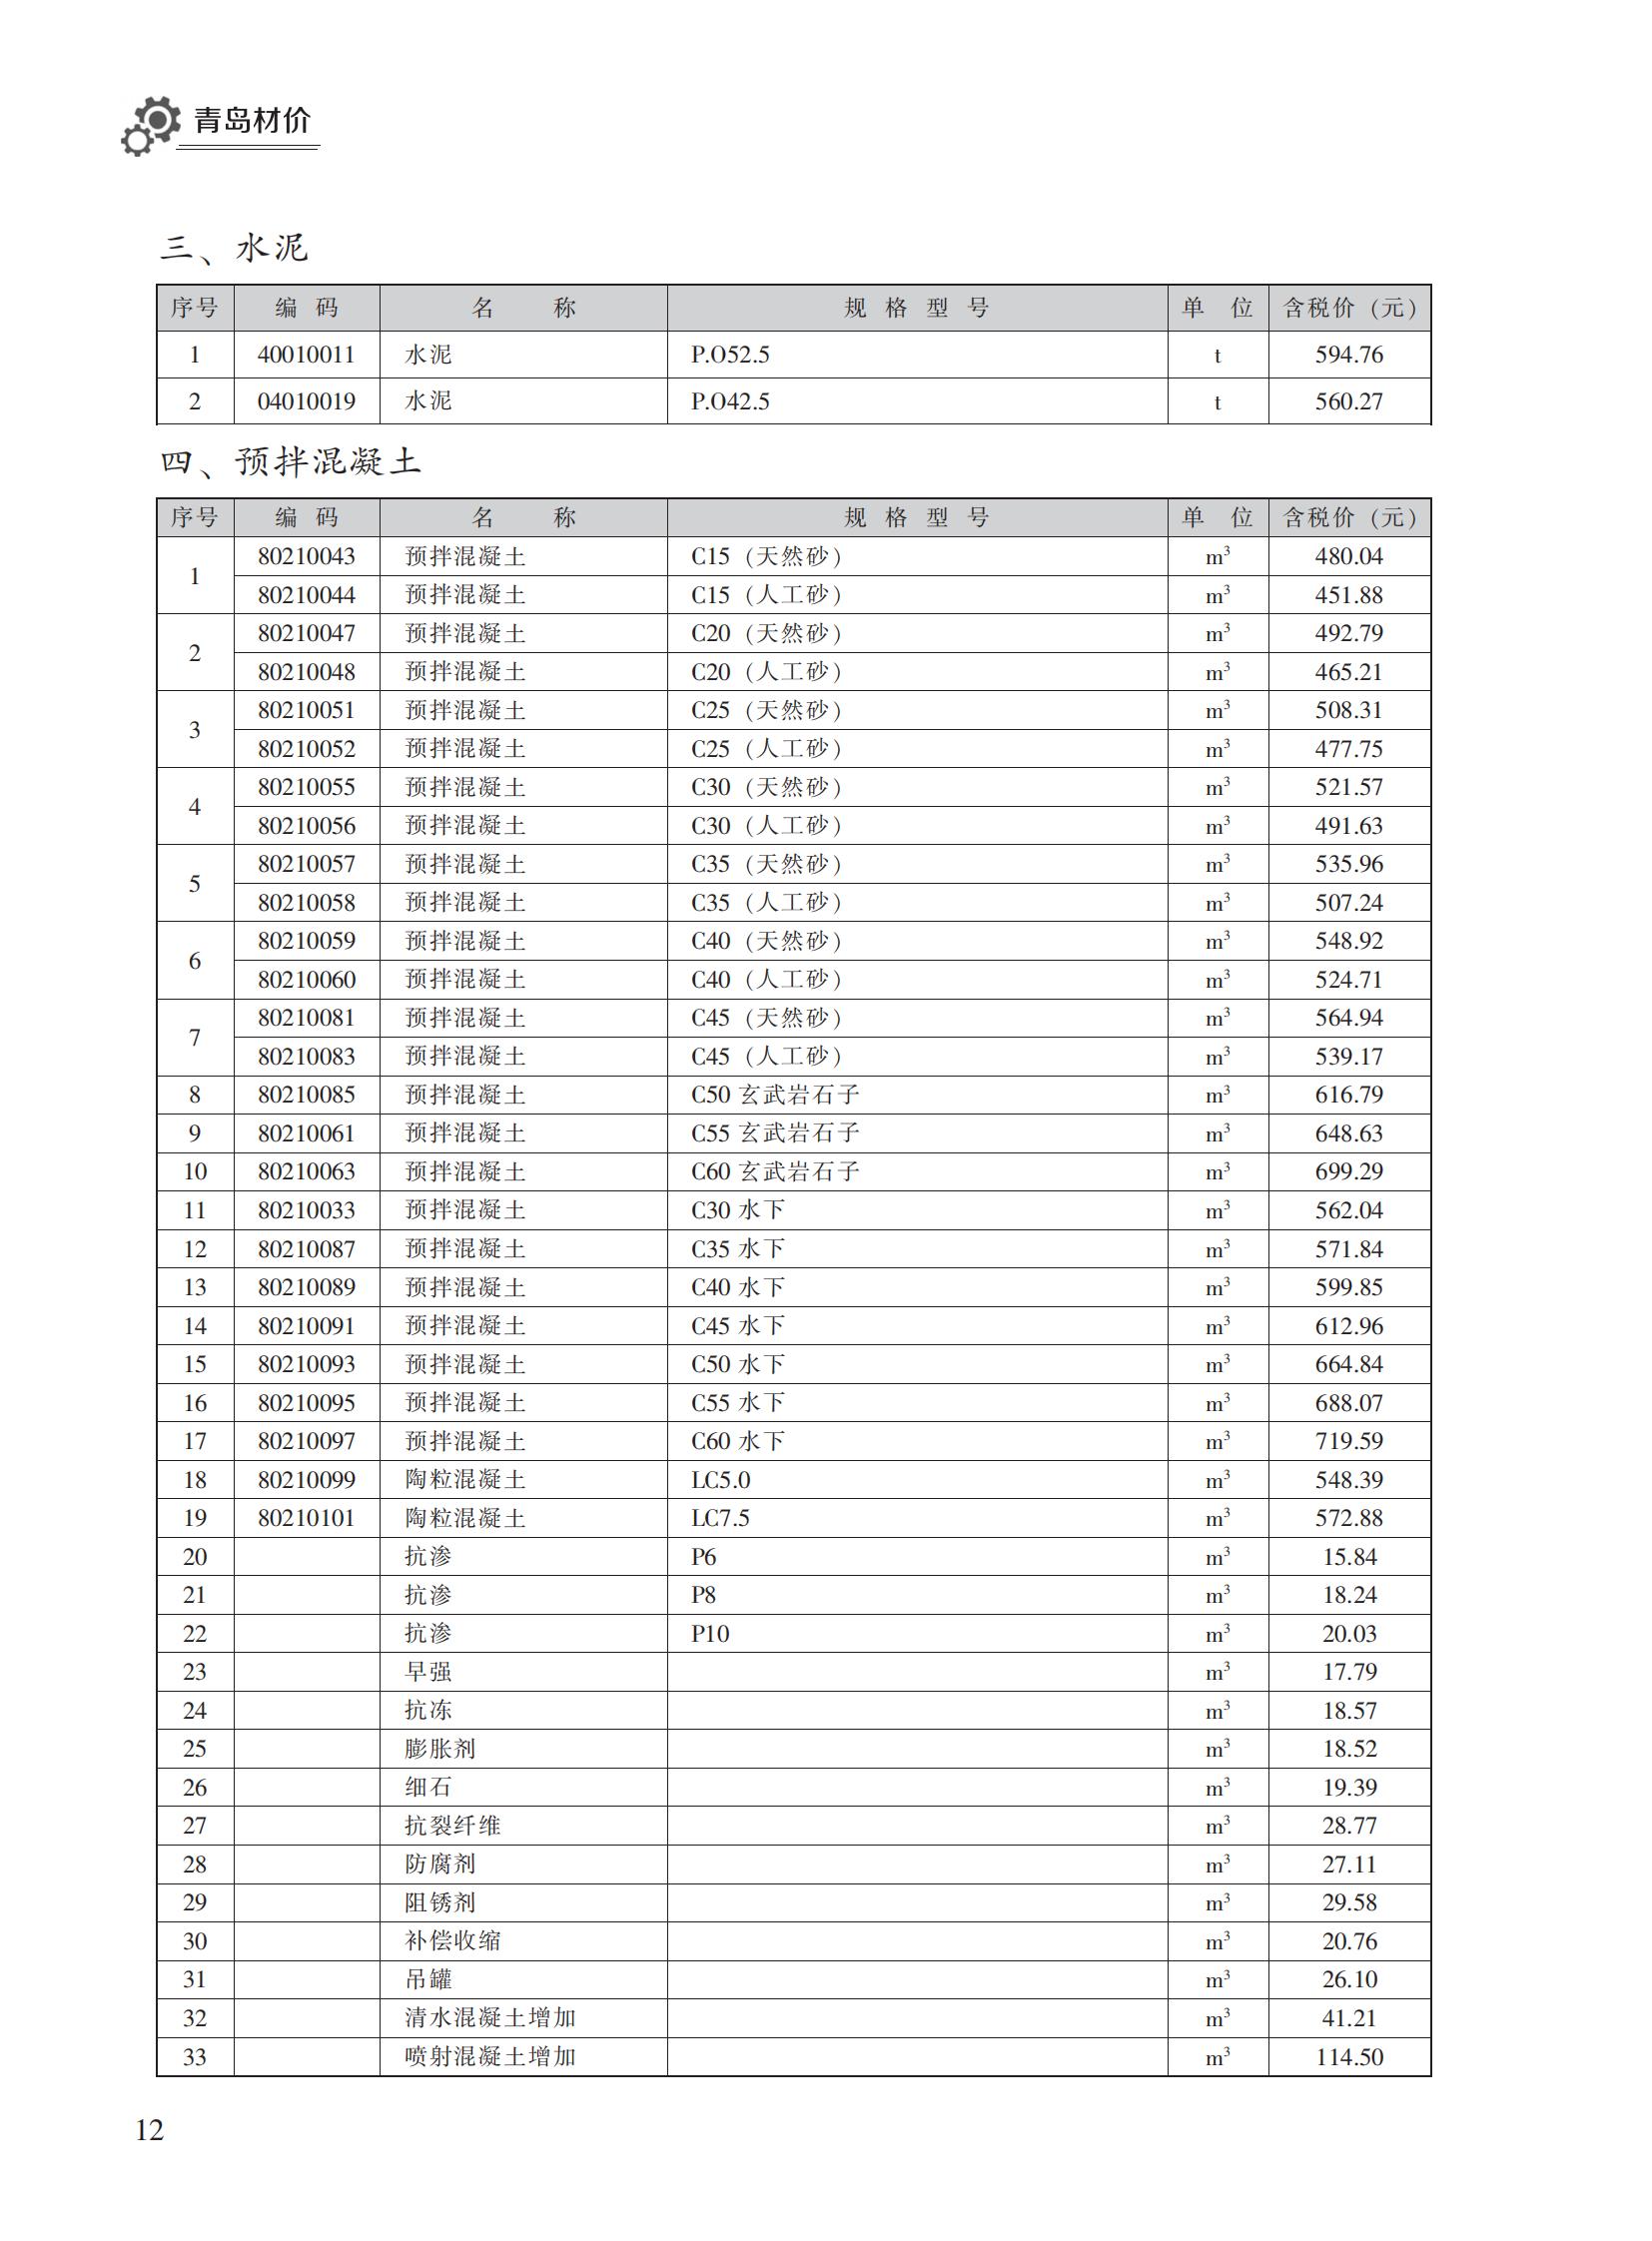 2022年12月青岛市建设工程材料价格及造价指数_11.jpg